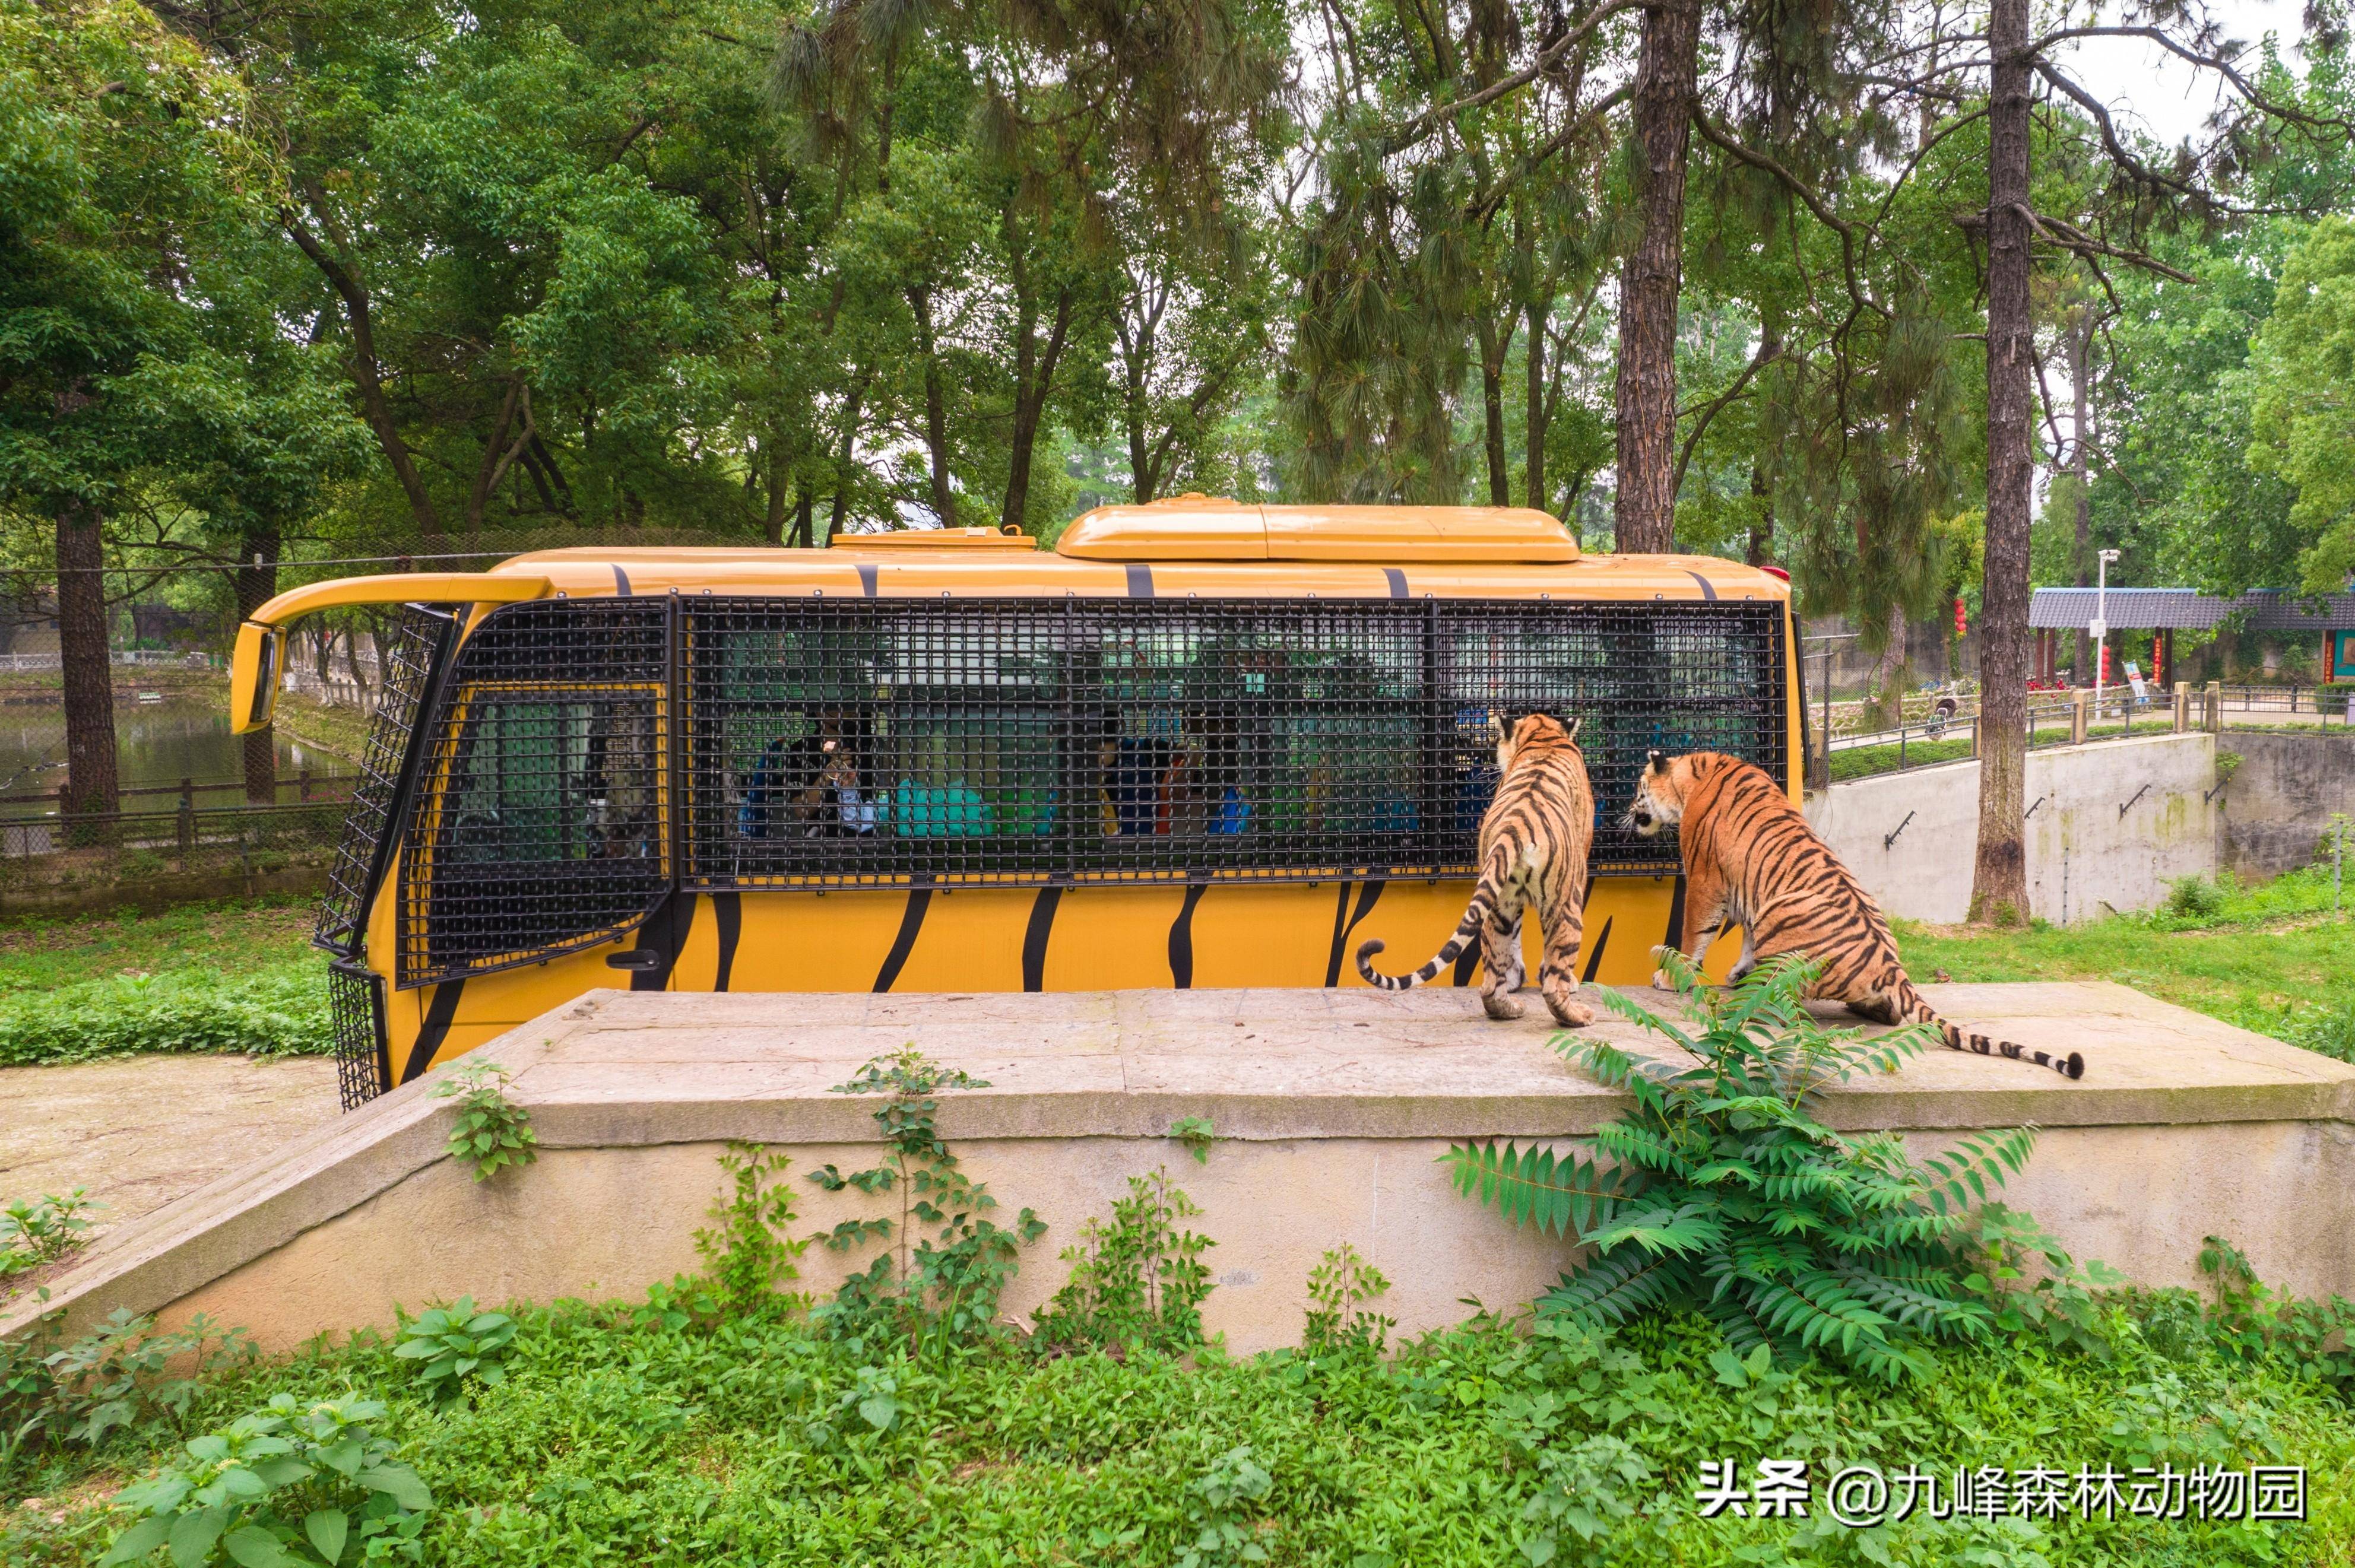 毕业就来九峰森林动物园开启狂欢之旅!